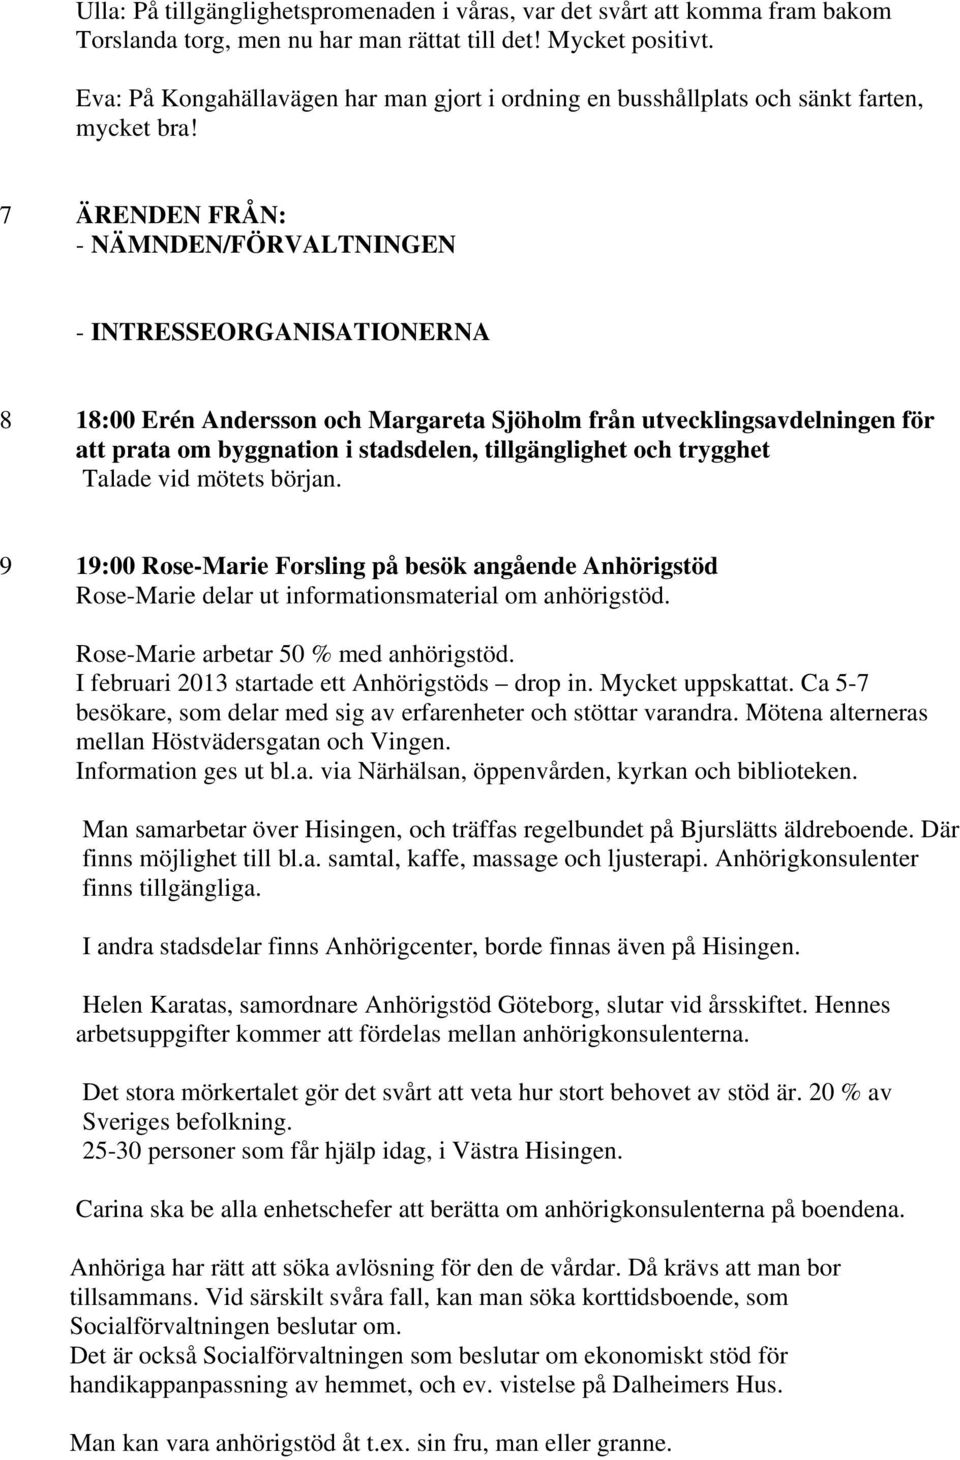 7 ÄRENDEN FRÅN: - NÄMNDEN/FÖRVALTNINGEN - INTRESSEORGANISATIONERNA 8 18:00 Erén Andersson och Margareta Sjöholm från utvecklingsavdelningen för att prata om byggnation i stadsdelen, tillgänglighet